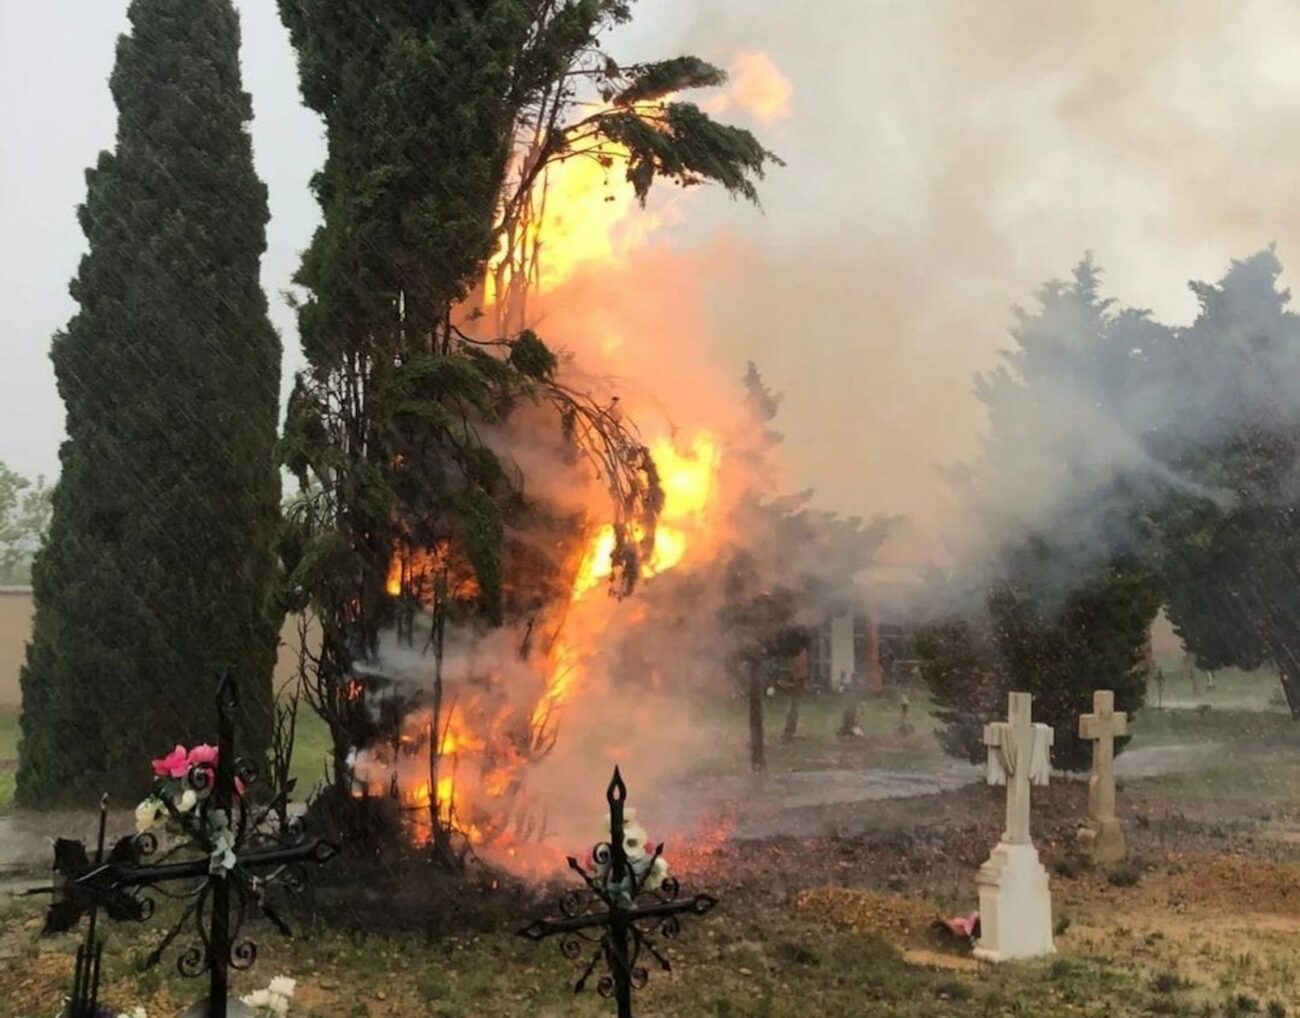 La caída de un rayo durante una tormenta produjo un incendio en el cementerio de Aguaviva